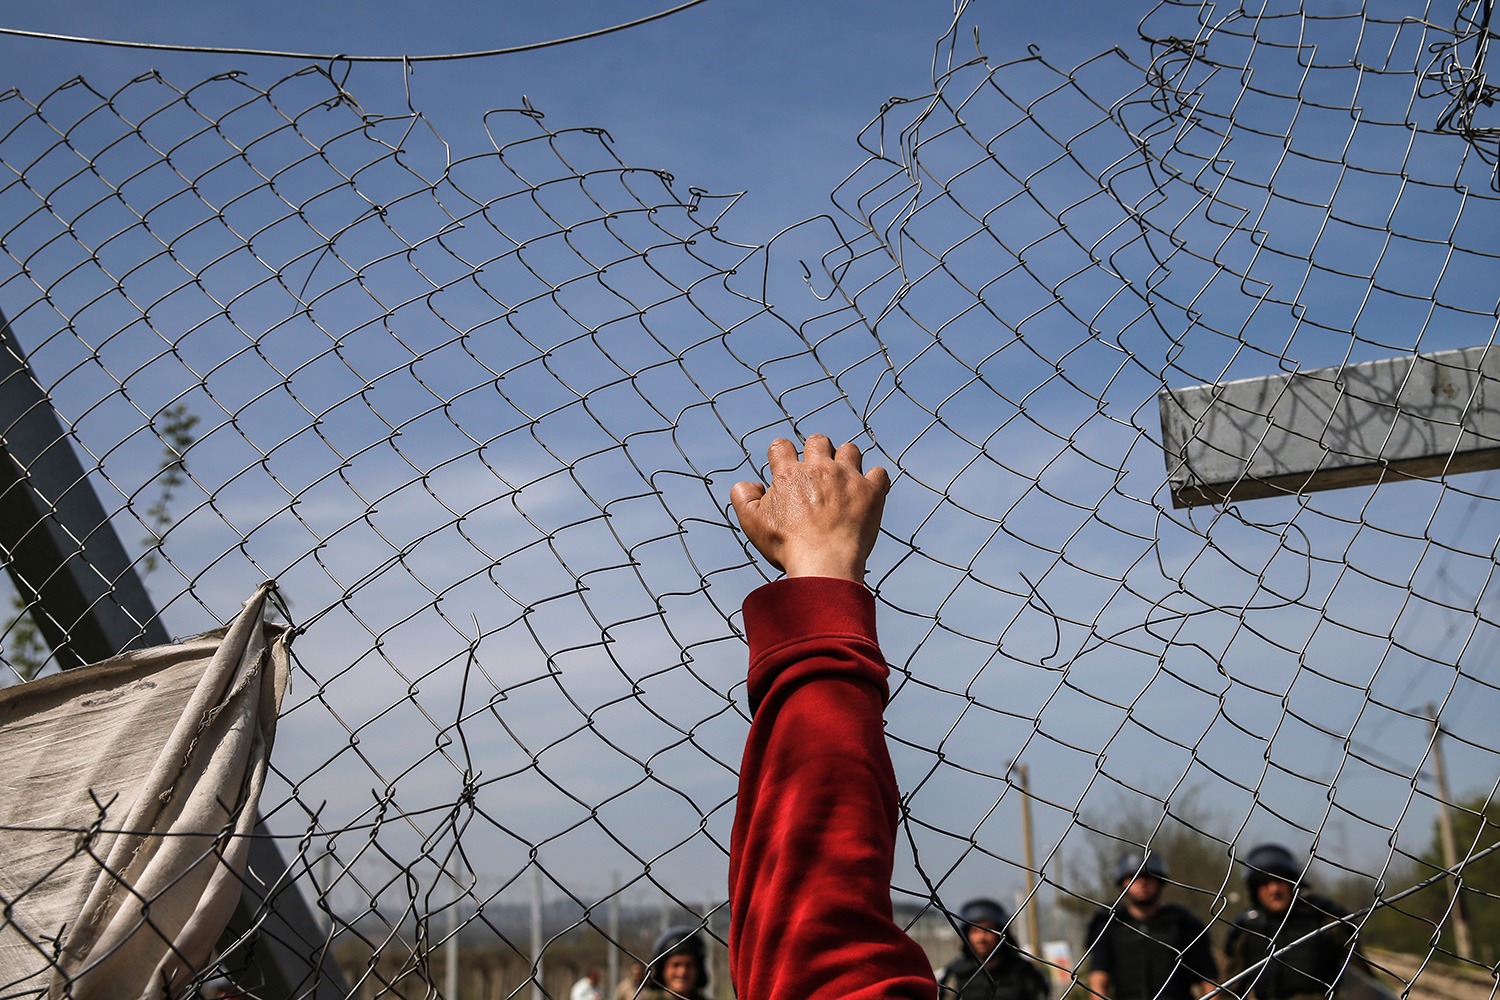 La fórmula de George Soros para paliar la crisis de refugiados que sonroja a los gobiernos